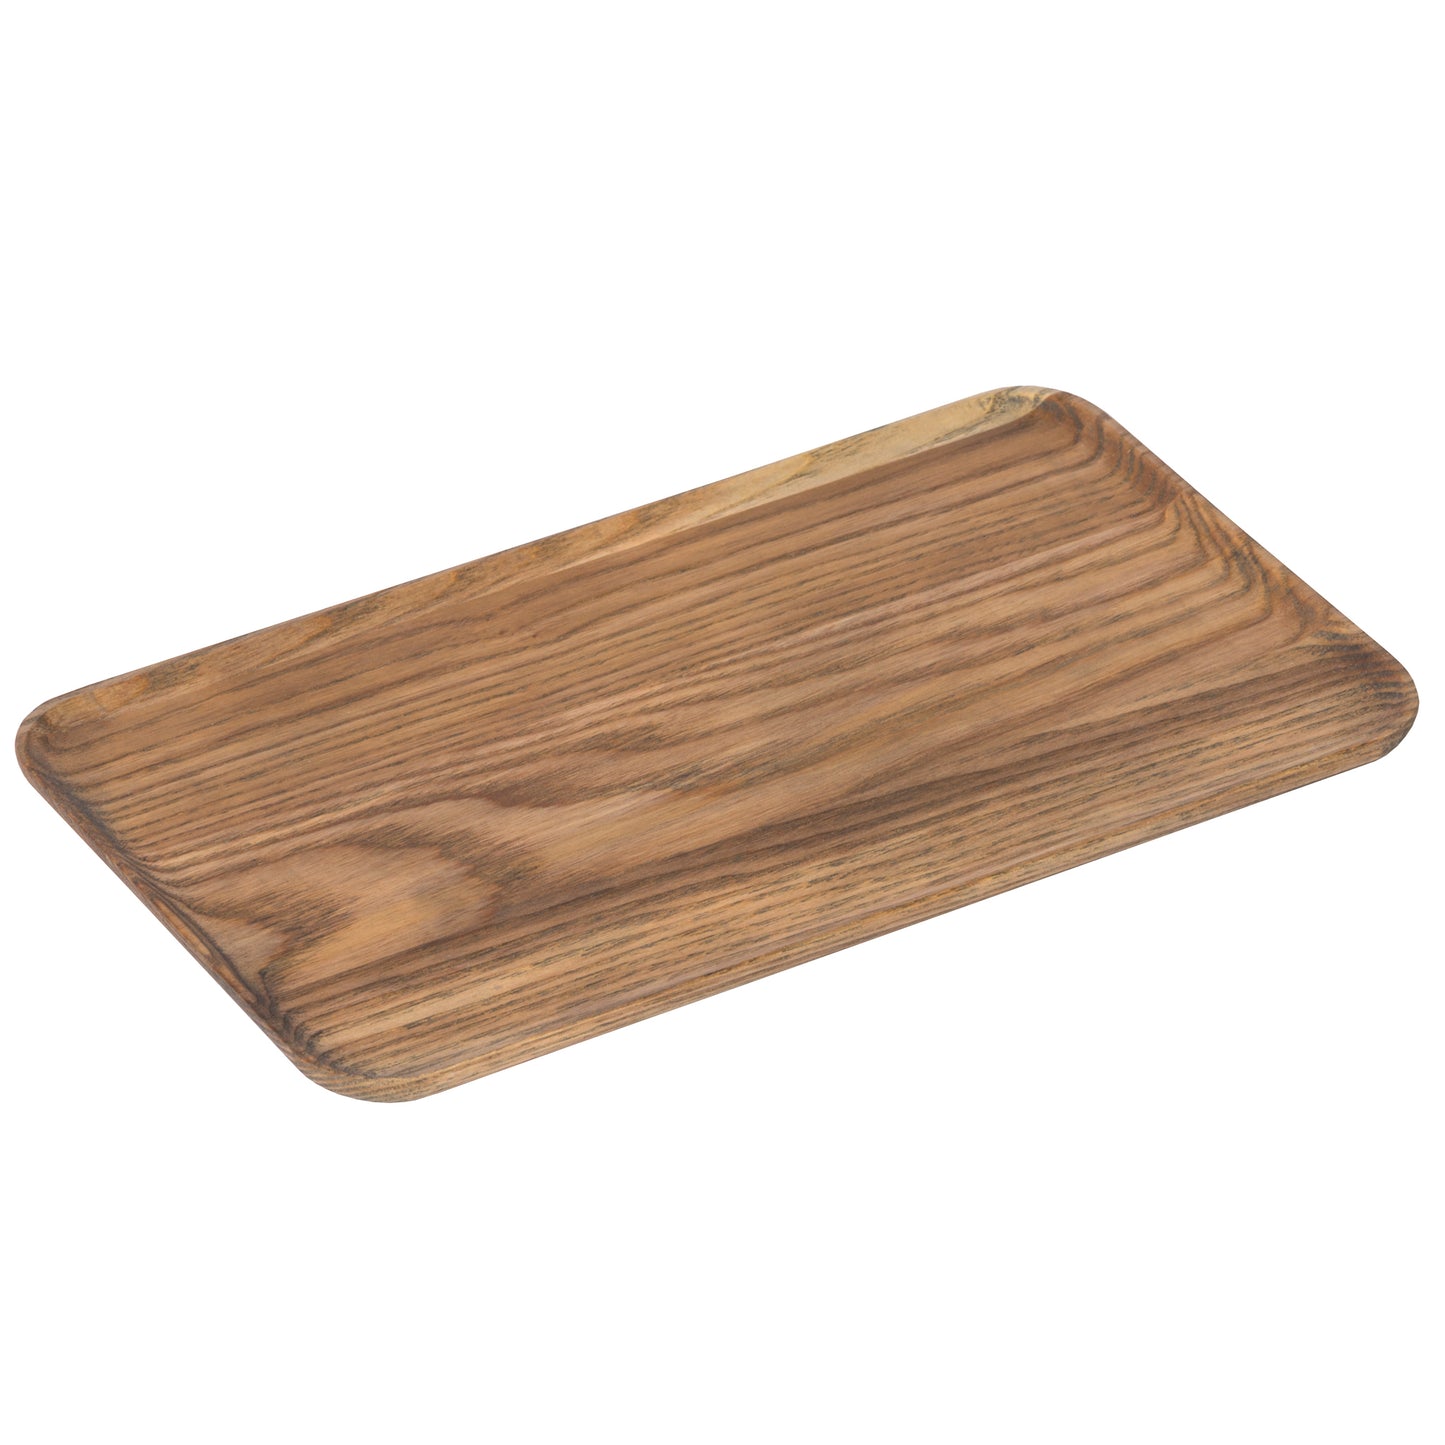 Driftwood Appetizer Plate-14" x 5 1/2"